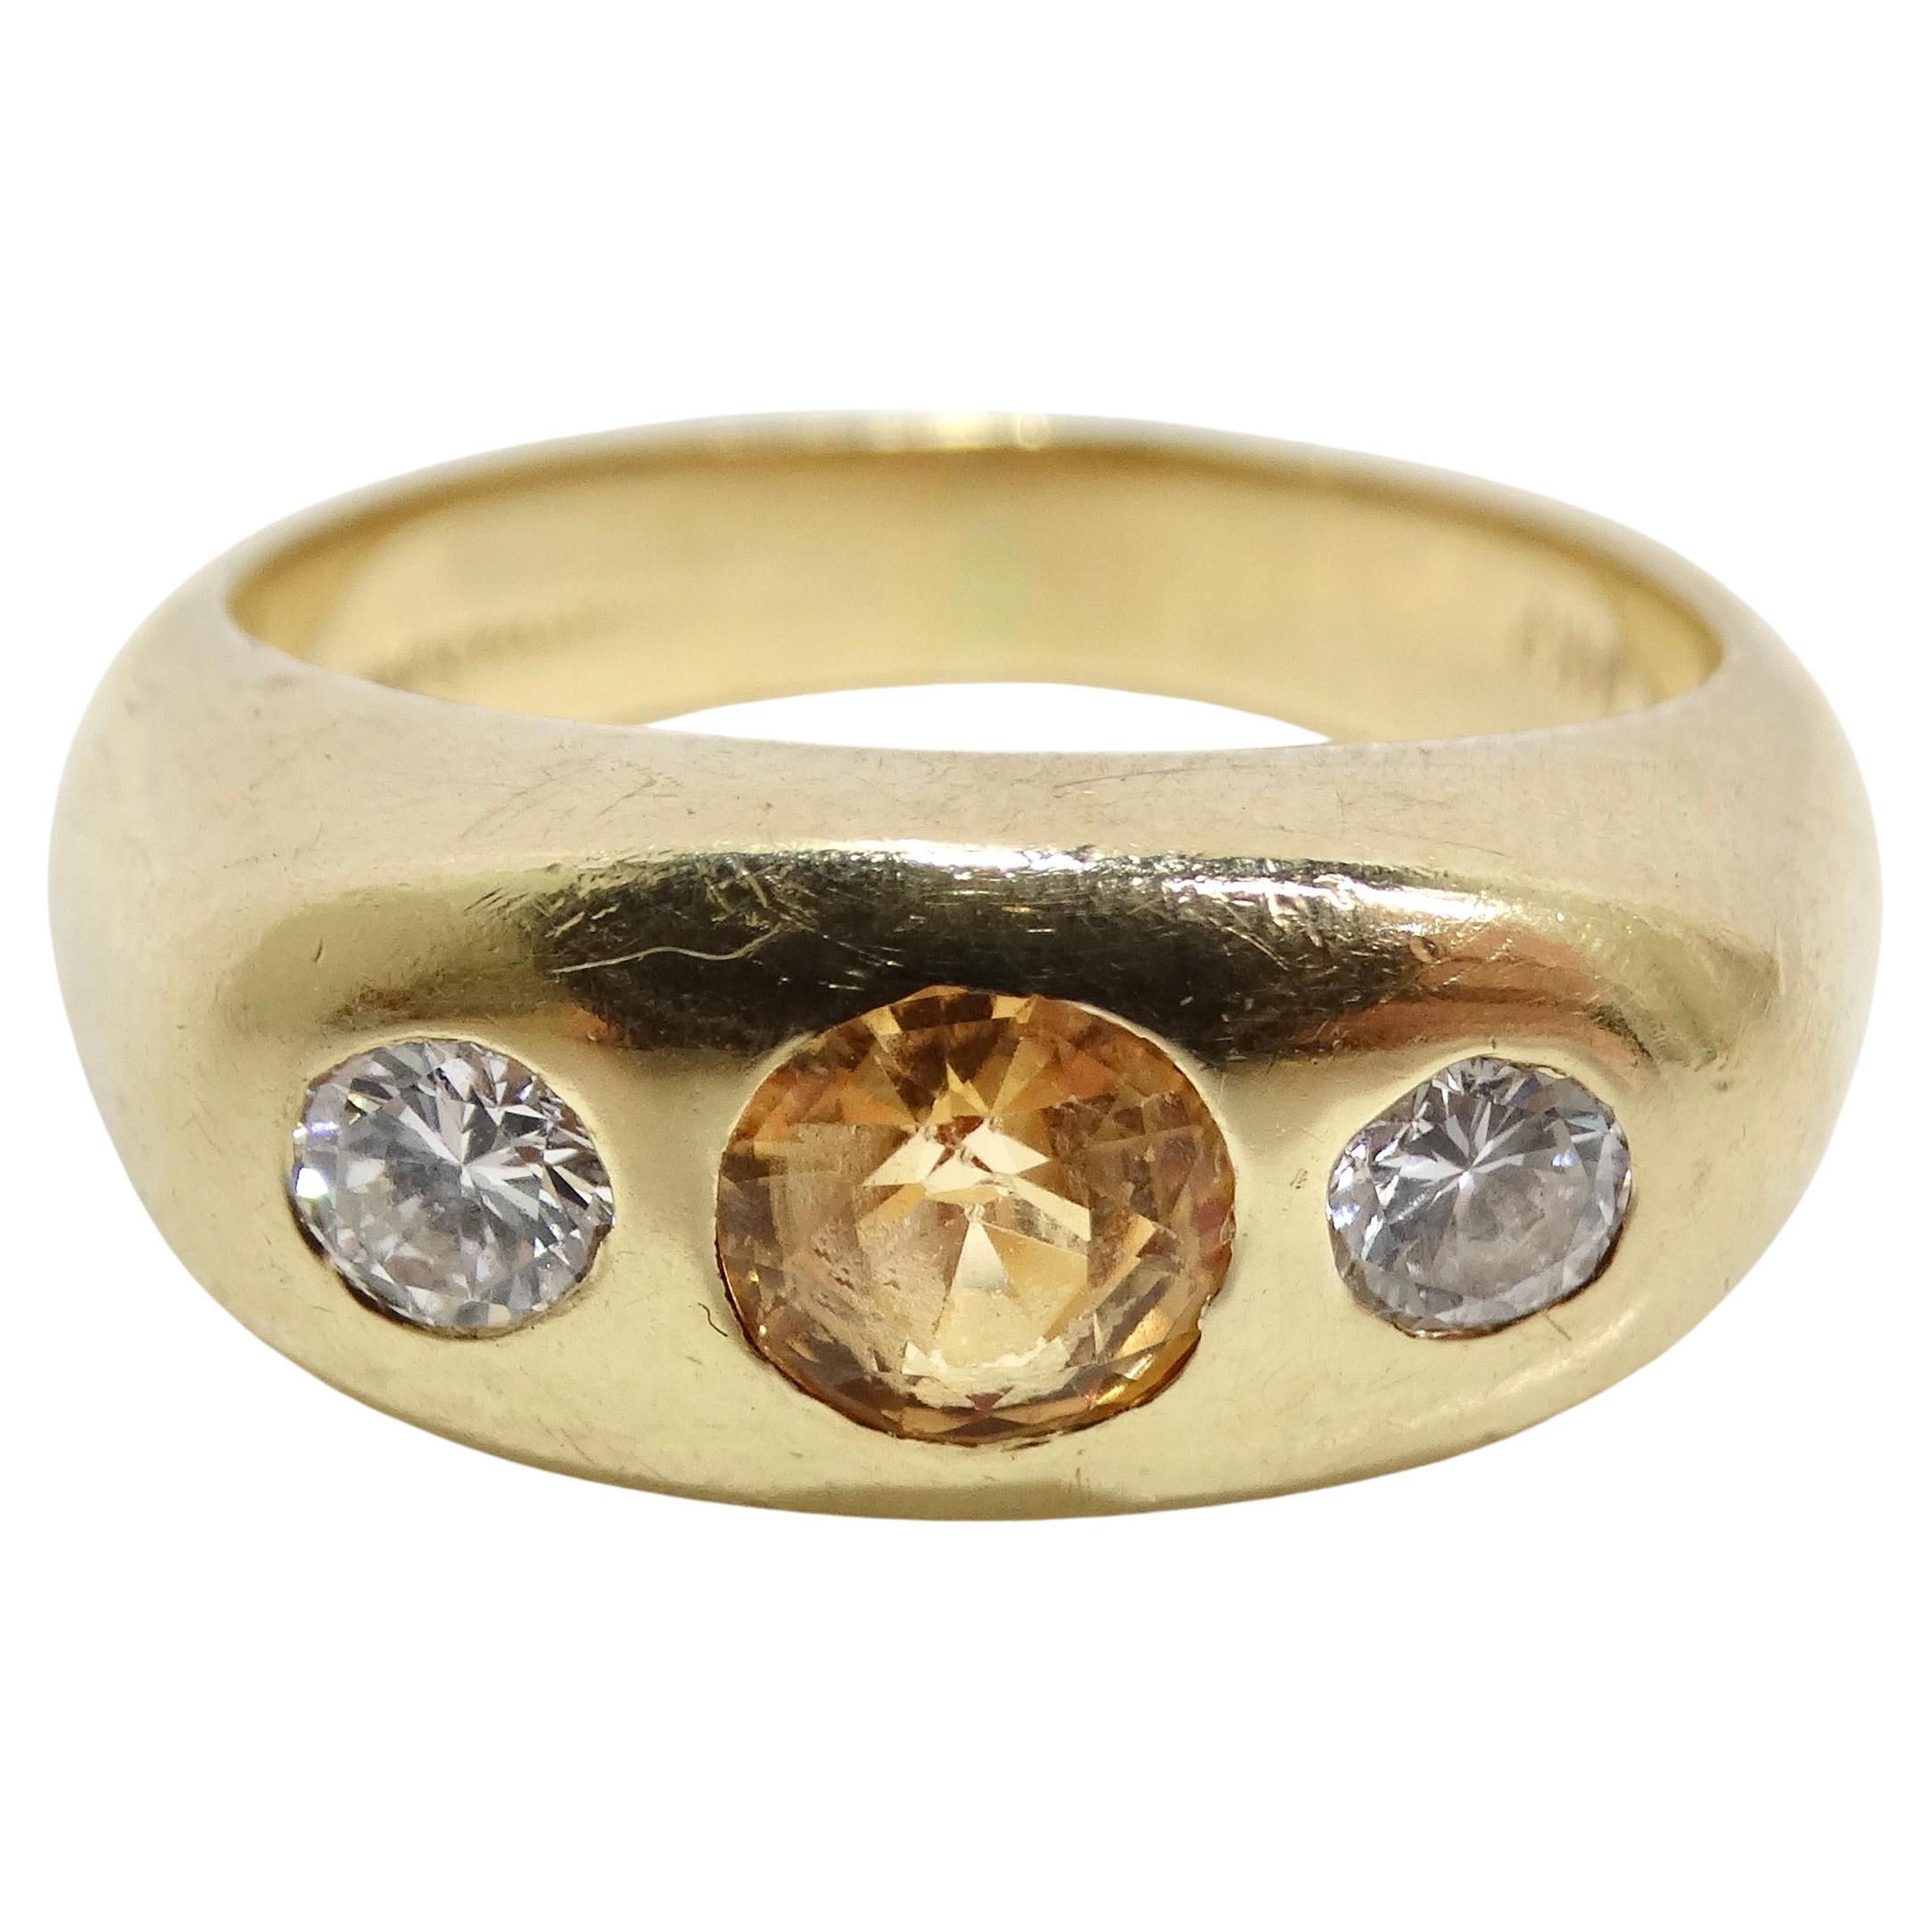 Erhöhen Sie Ihren Stil mit dem 14K Solid Gold Diamond Sapphire Ring - ein klassisches, vielseitiges und glamouröses Stück, das Luxus ausstrahlt. Dieser Ring aus massivem Gelbgold aus dem Jahr 1970 ist mit einem 1,5 Karat schweren gelben Saphir in